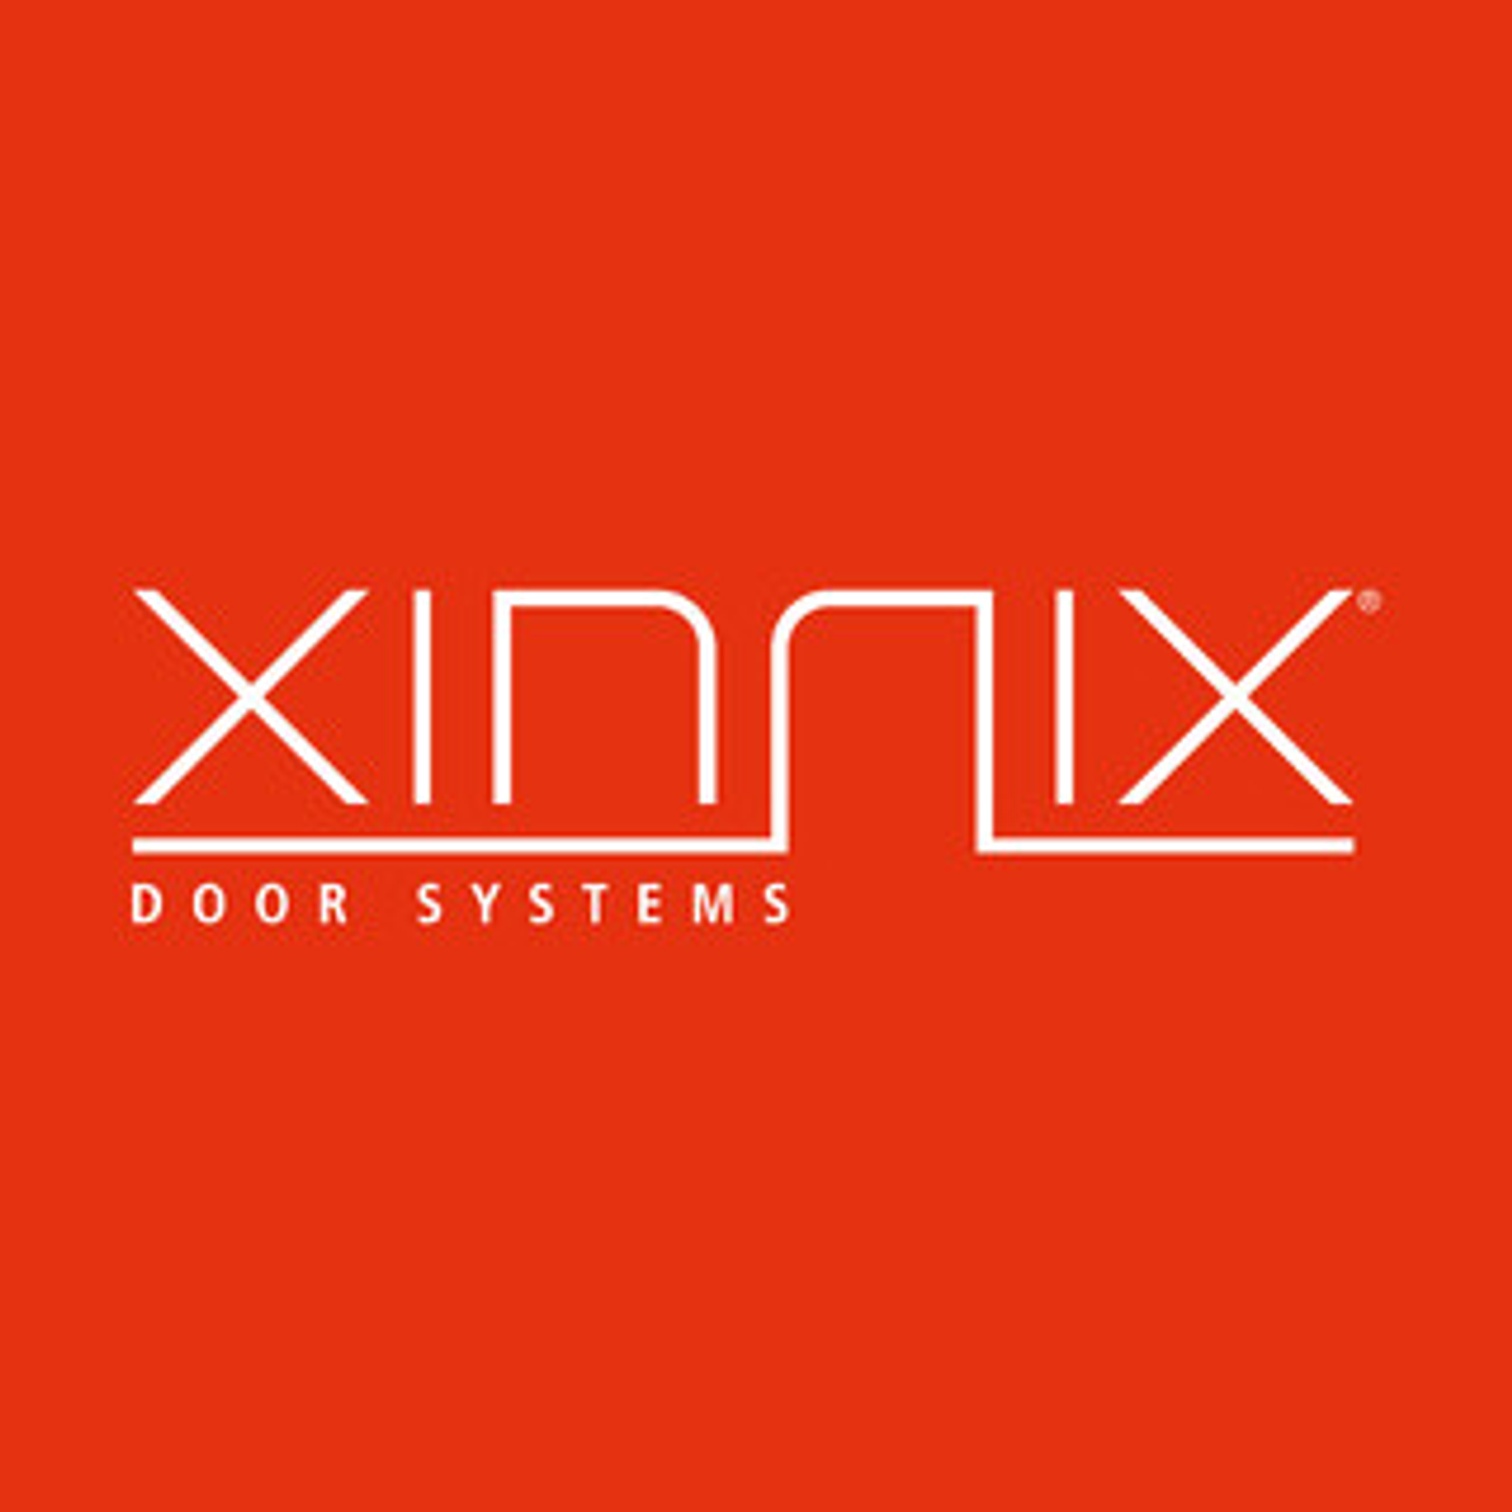 Xinnix Door Systems logo